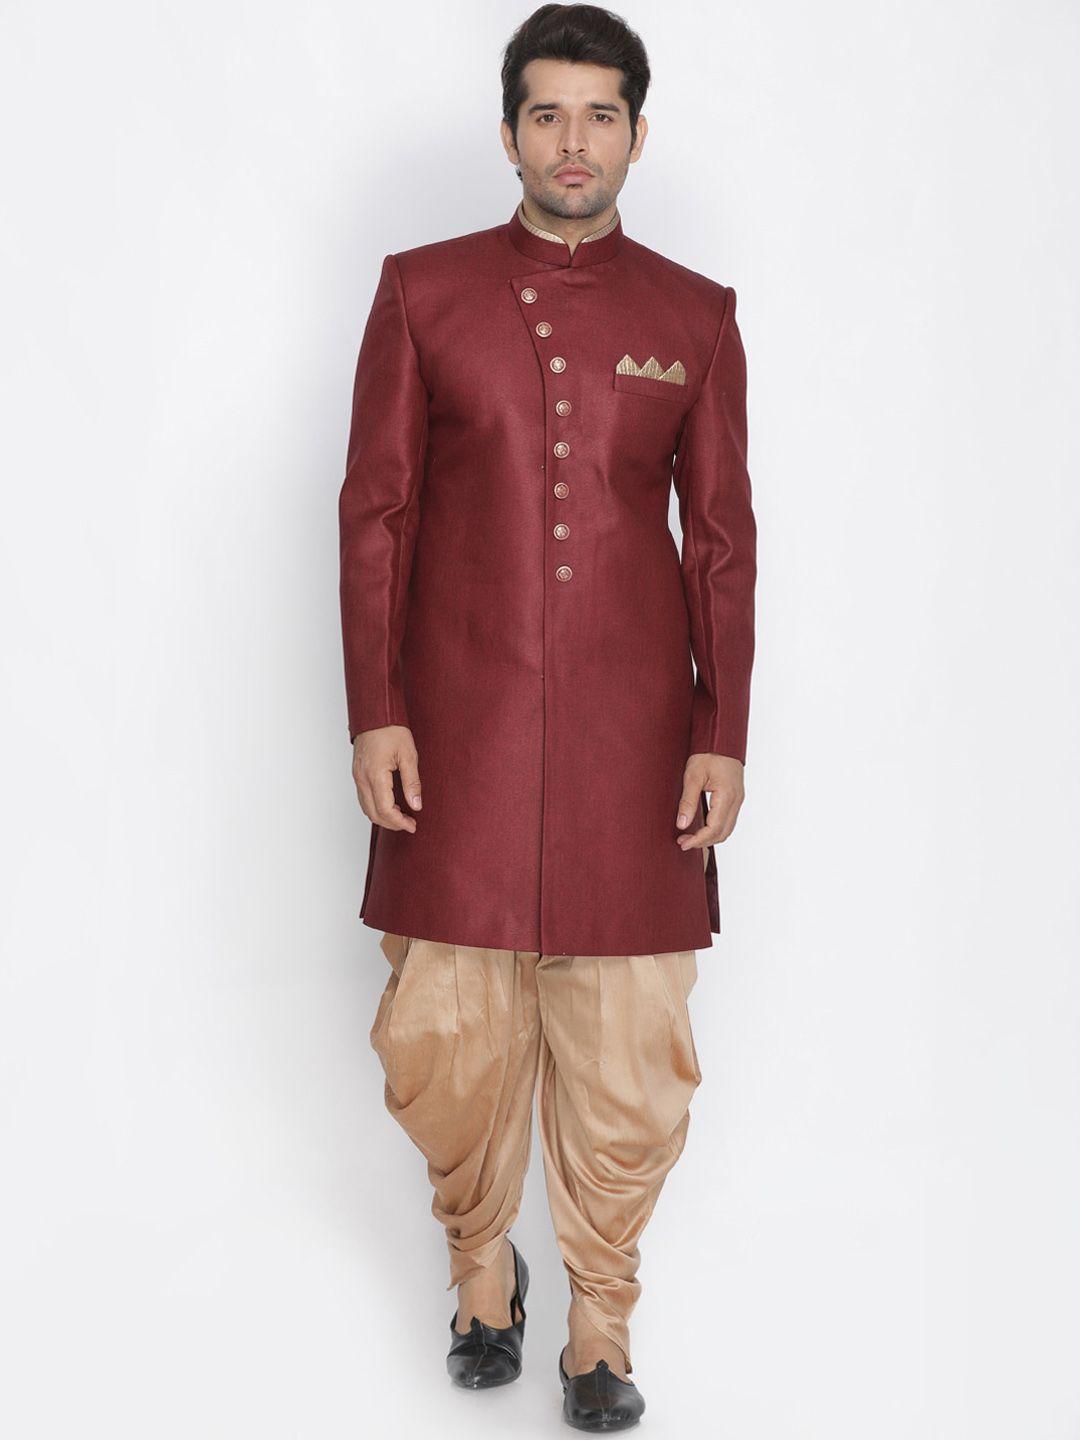 vm-mandarin-collar-jute-cotton-slim-fit-sherwani-set